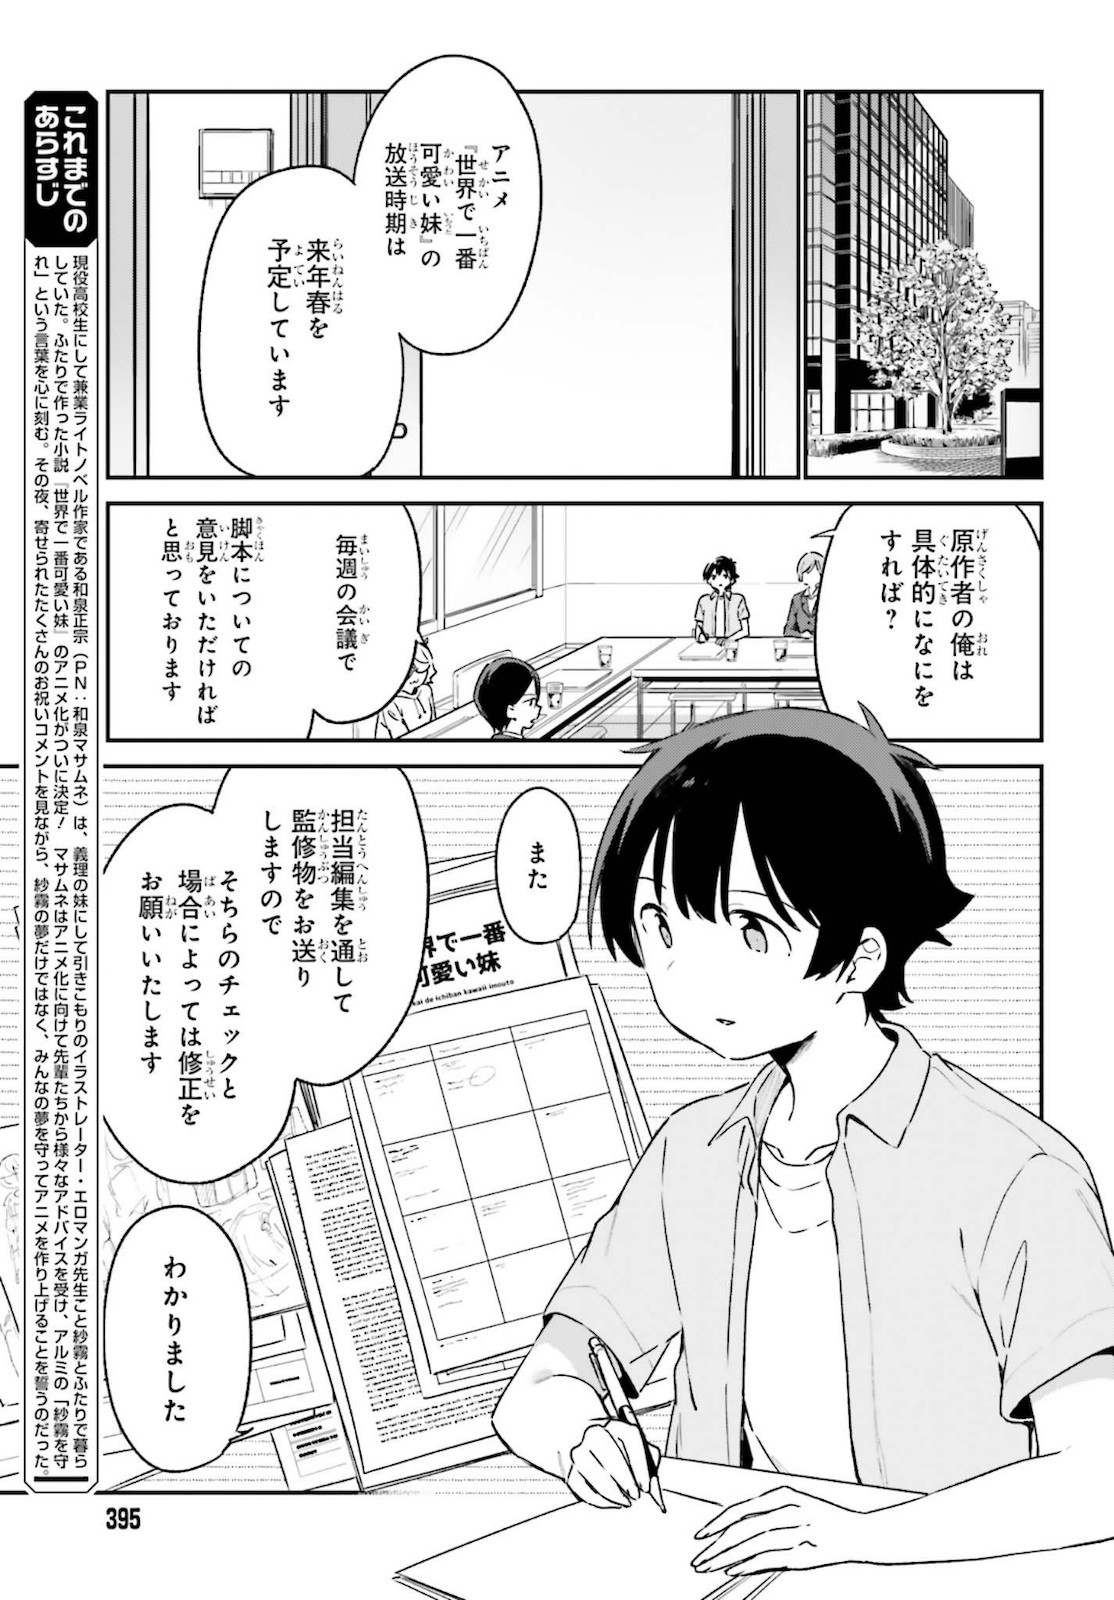 Ero Manga Sensei - Chapter 75 - Page 3